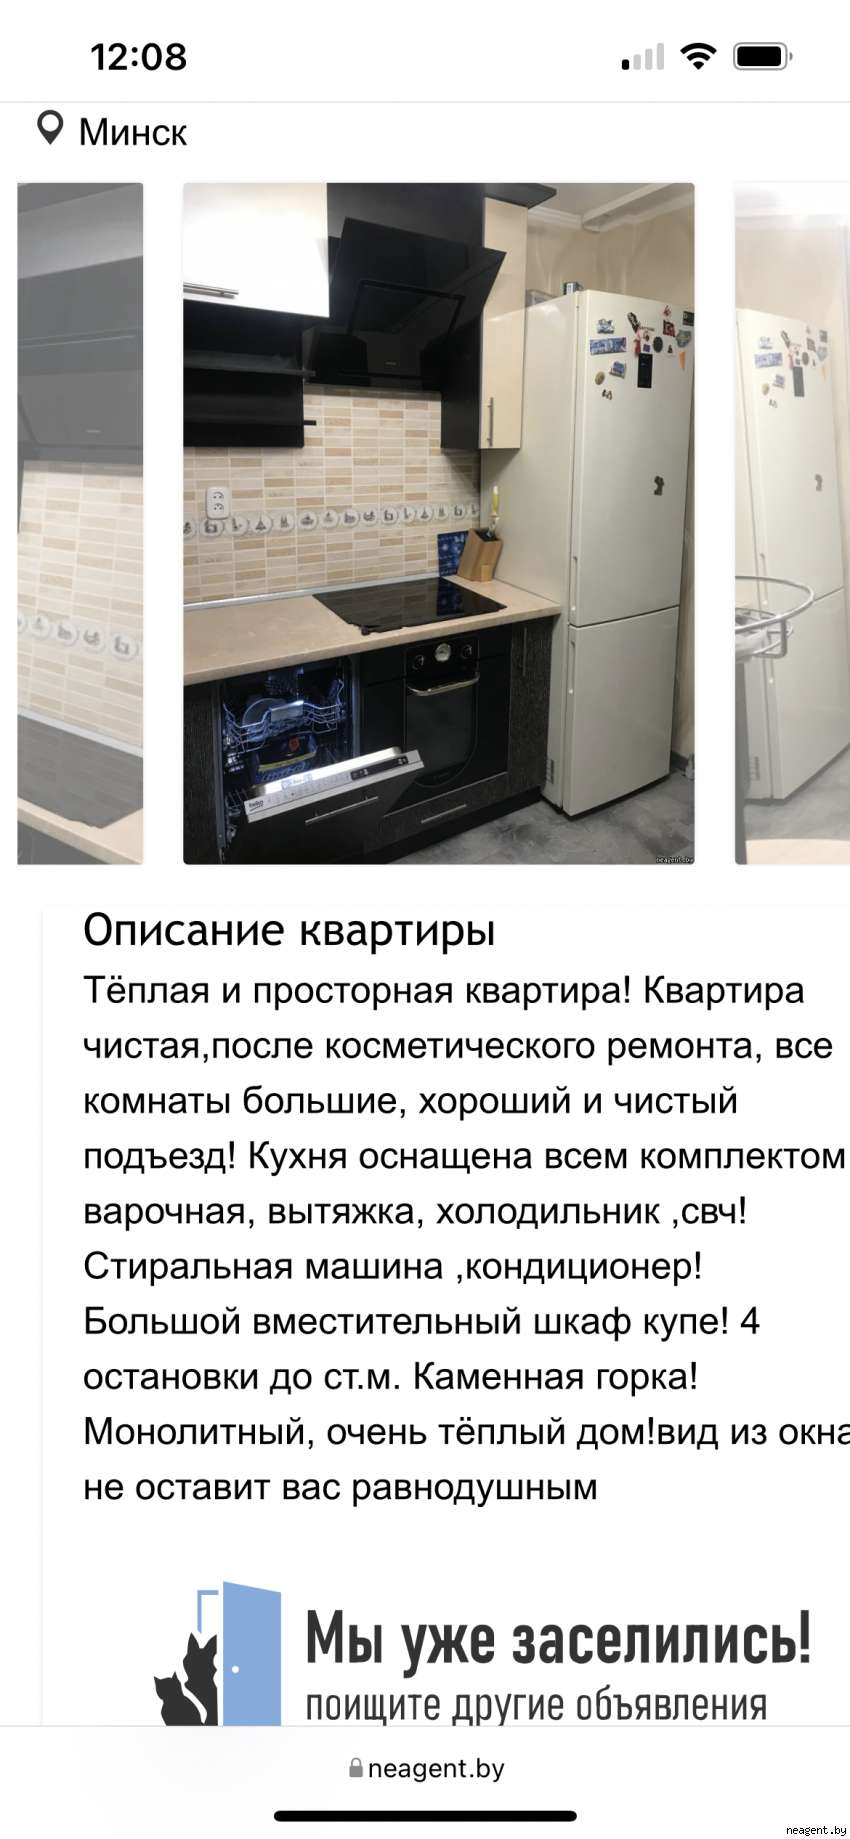 1-комнатная квартира, ул. Скрипникова, 15, 186000 рублей: фото 2